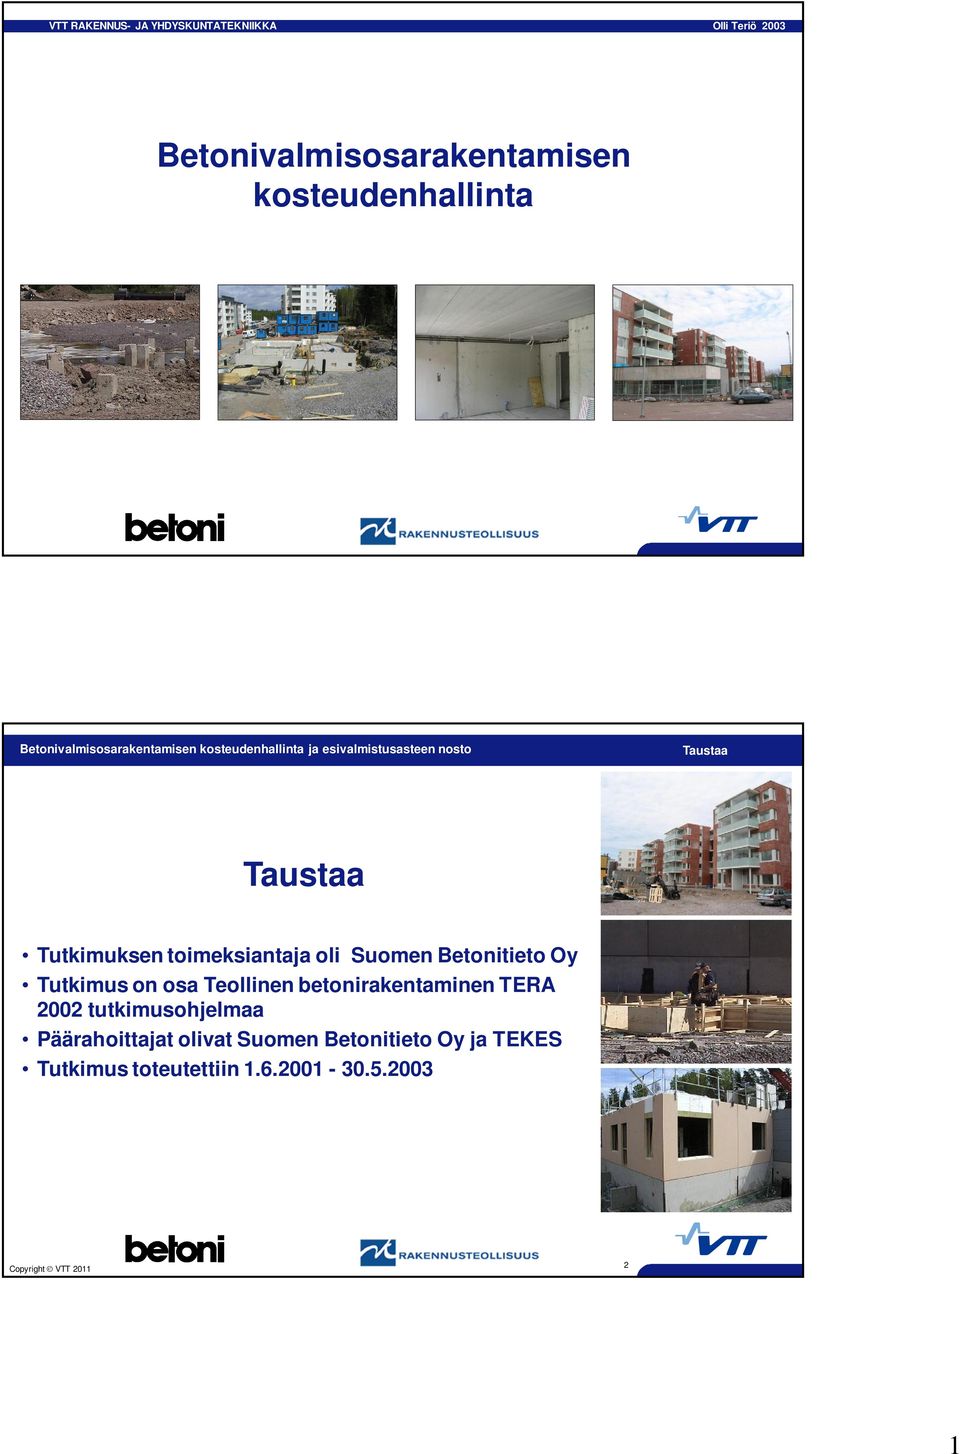 Oy Tutkimus on osa Teollinen betonirakentaminen TERA 2002 tutkimusohjelmaa